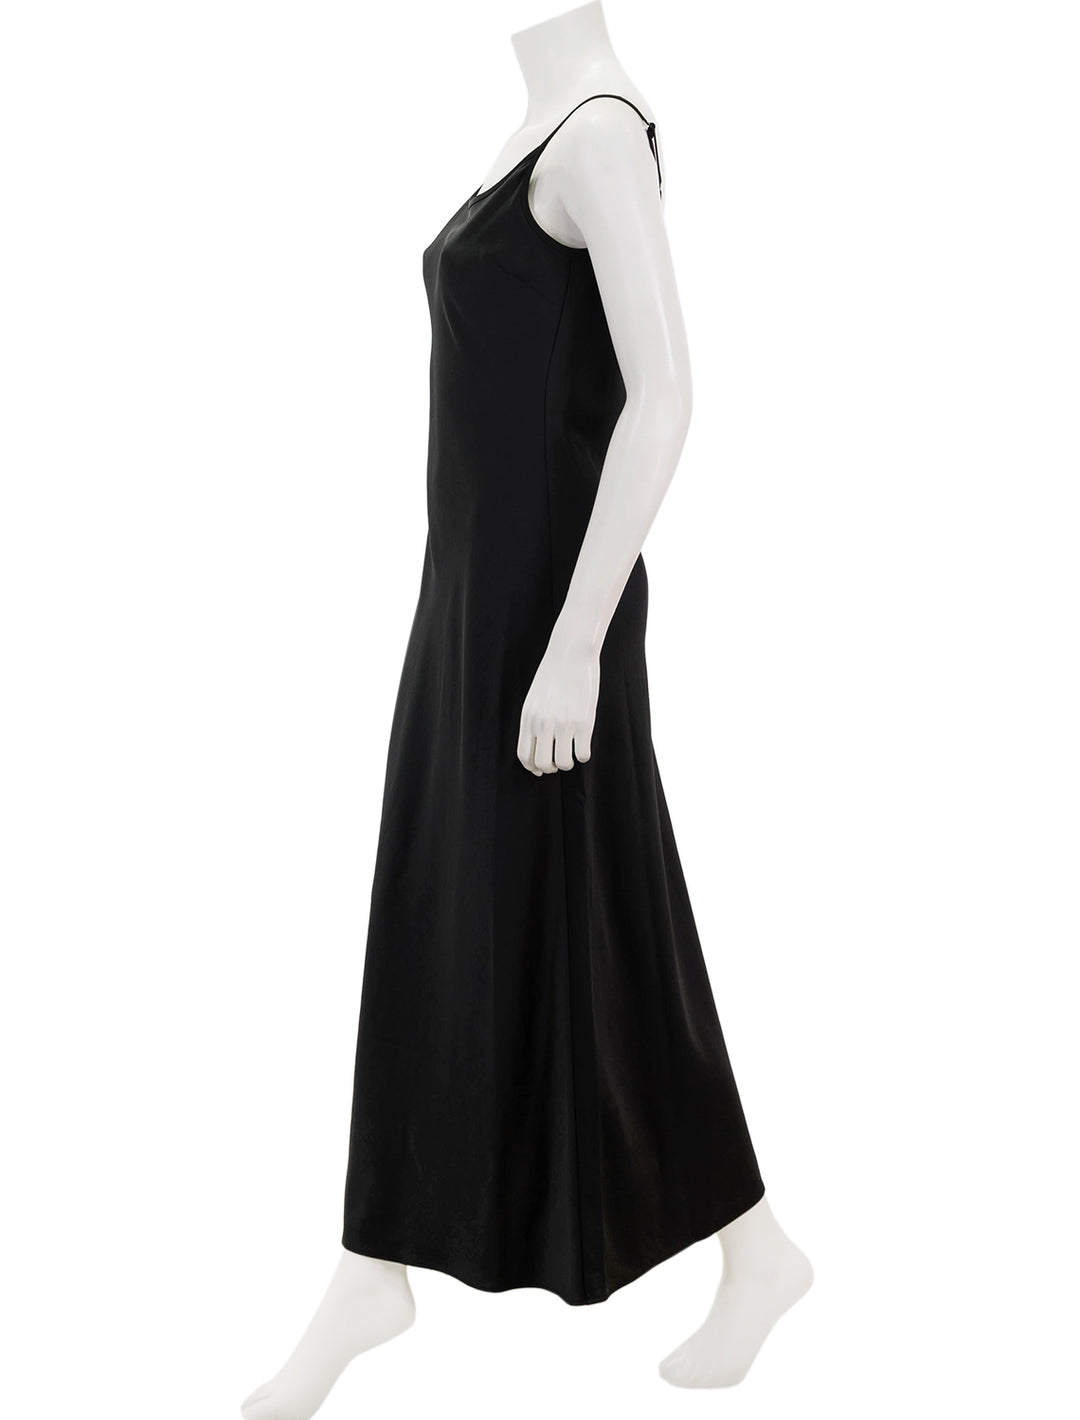 Side view of Saint Art's haley slip dress in black.